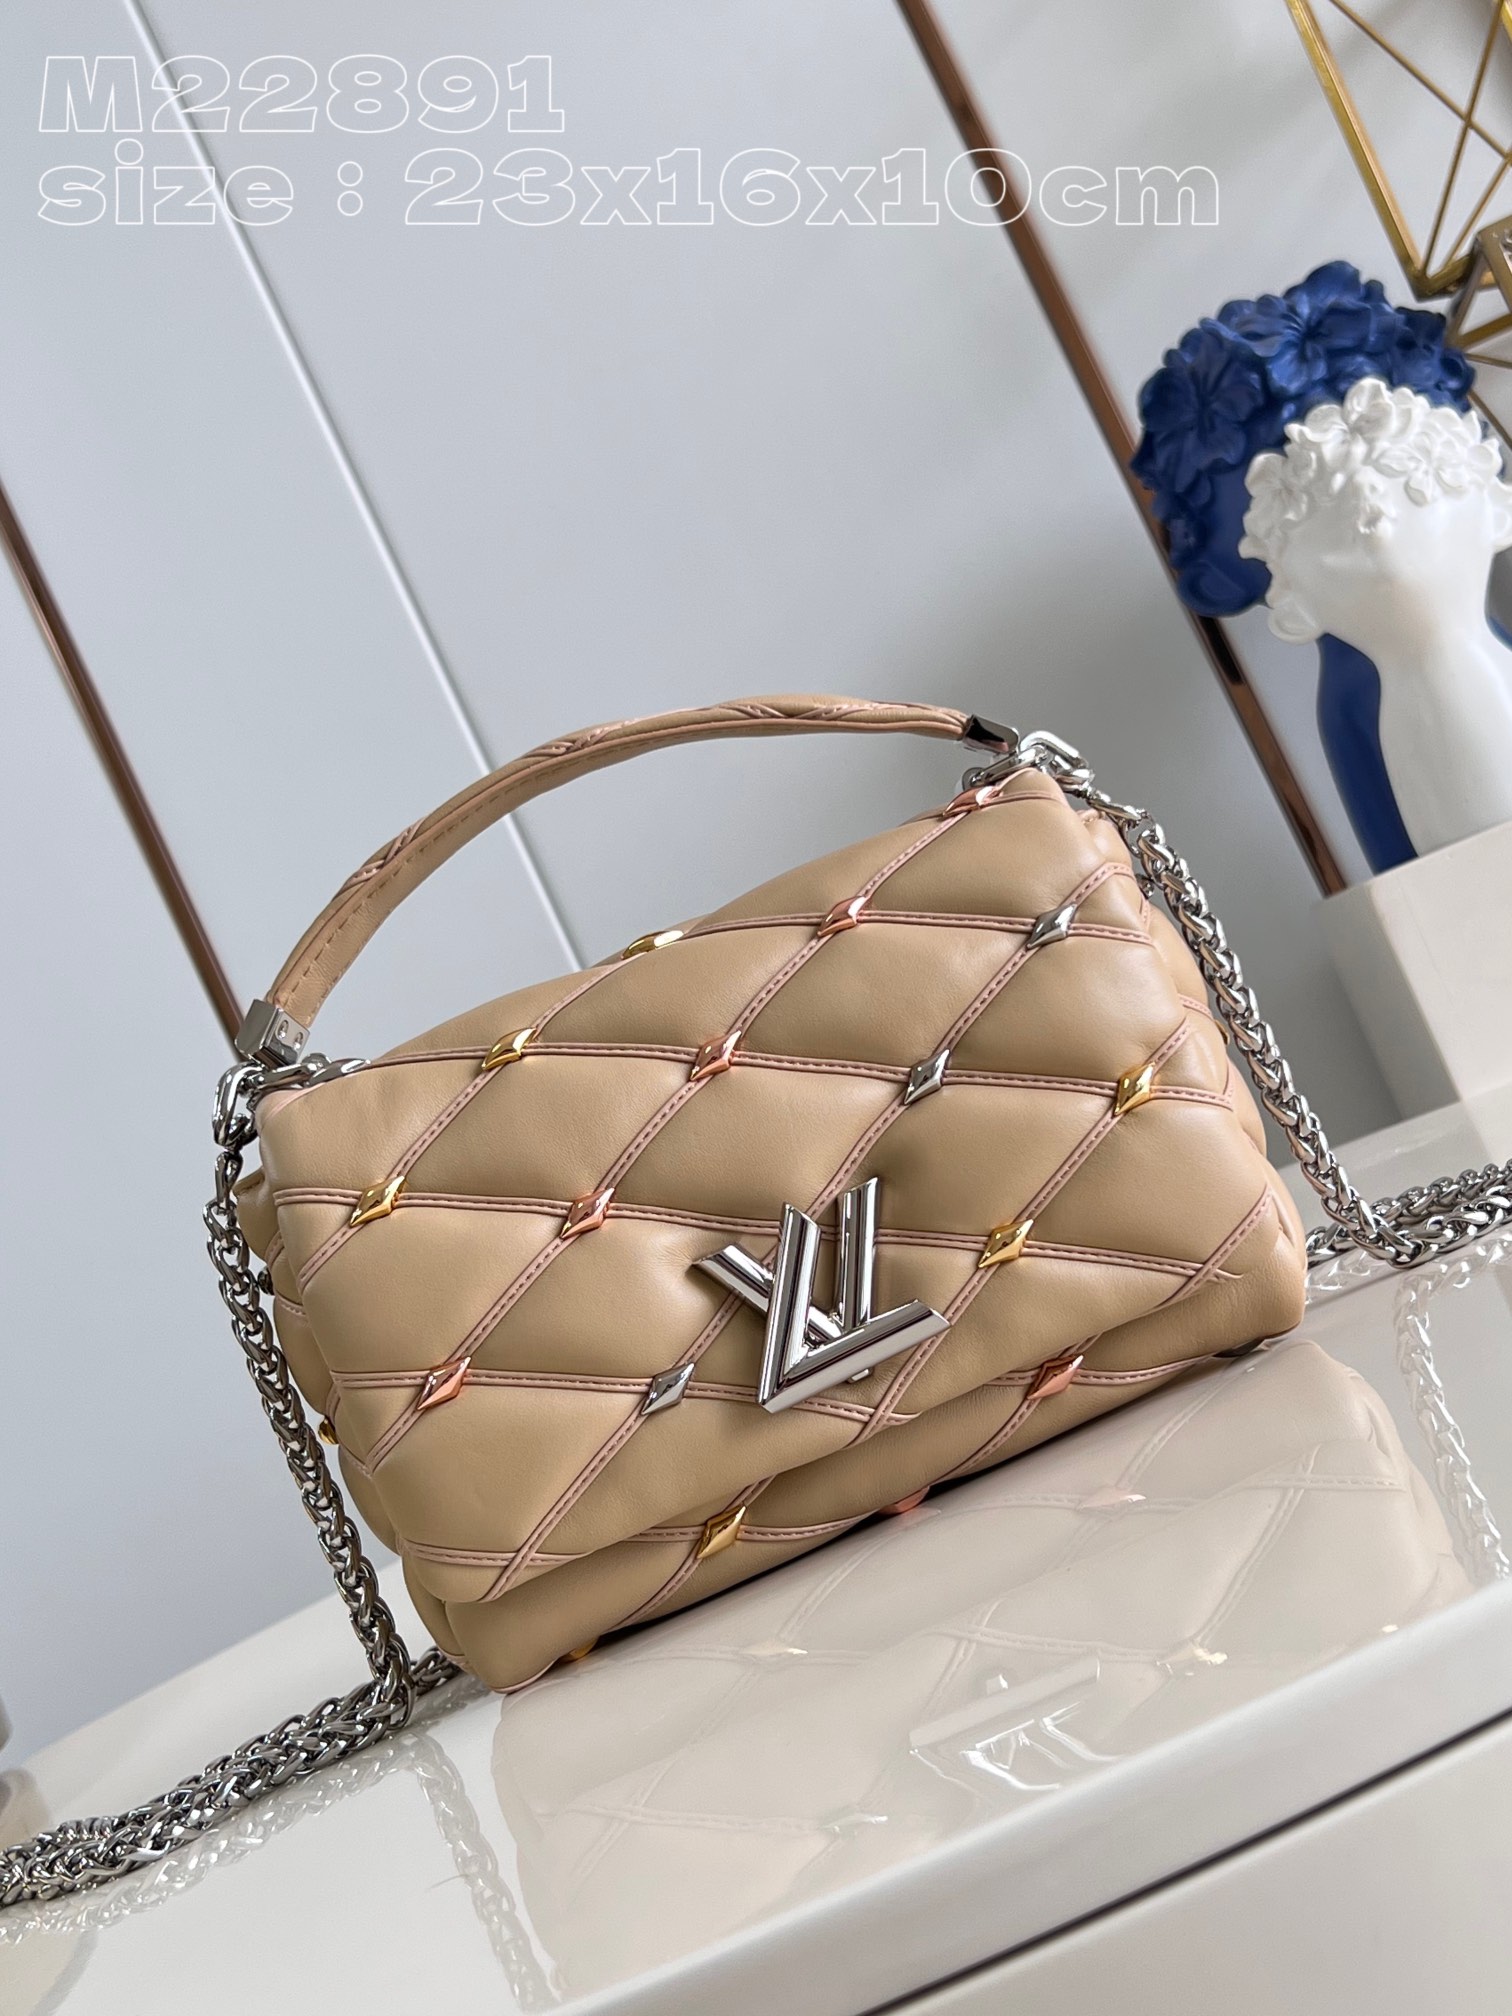 Louis Vuitton Bags Handbags Apricot Color Sheepskin LV Twist M22891